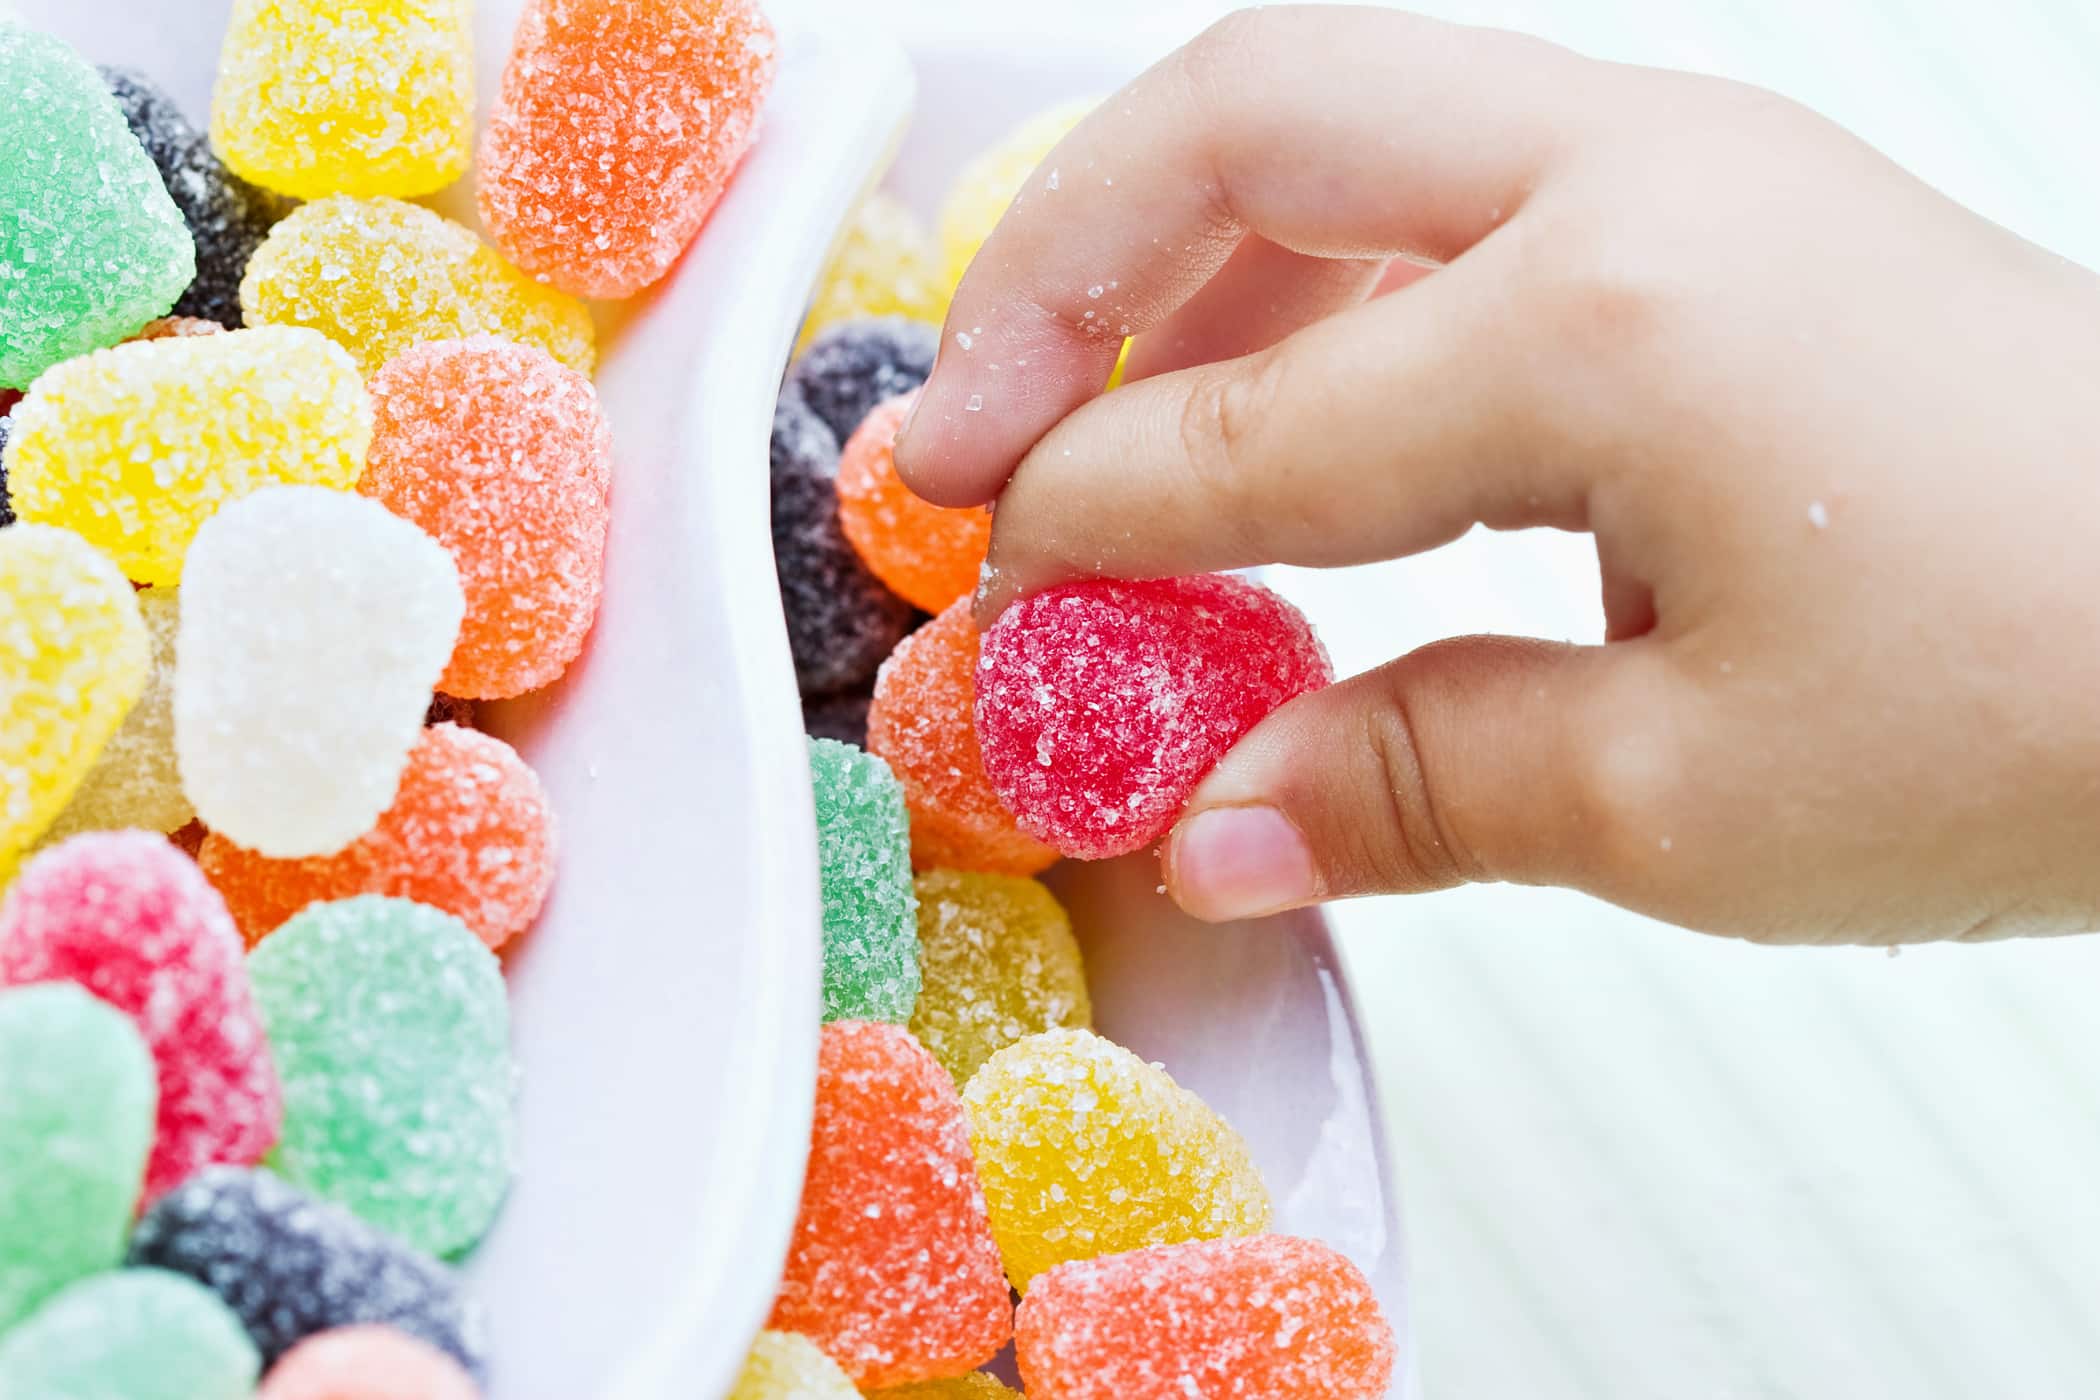 Le sucre n'est pas toujours mauvais pour la croissance et le développement des enfants, tant que les parents connaissent la limite